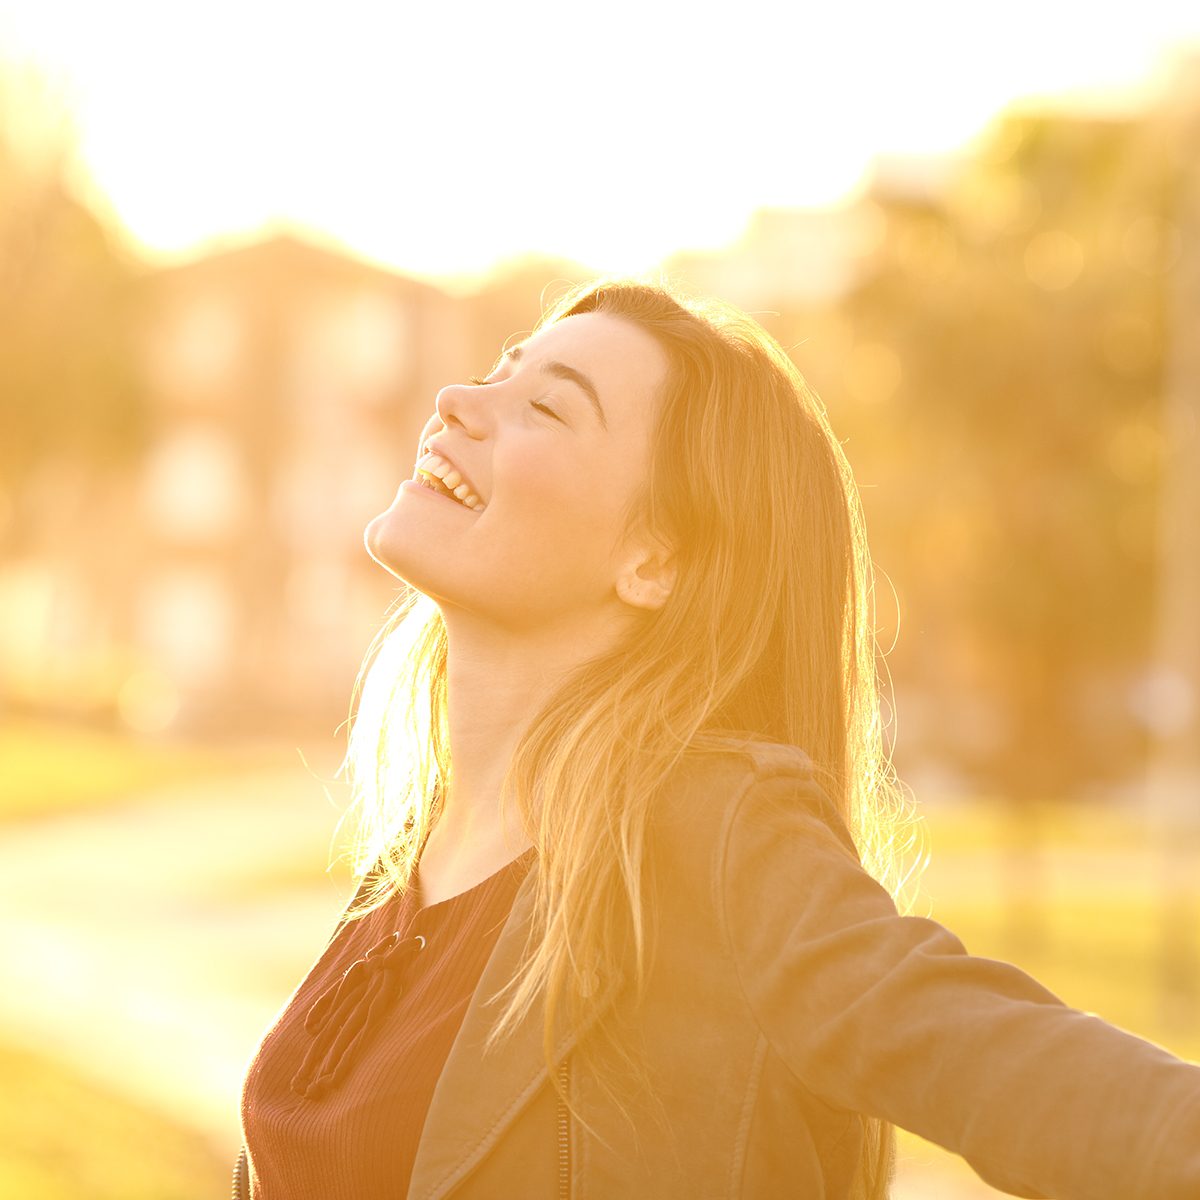 后灯的画像一个快乐的单身少女在日落公园呼吸新鲜空气温暖的黄灯和城市背景